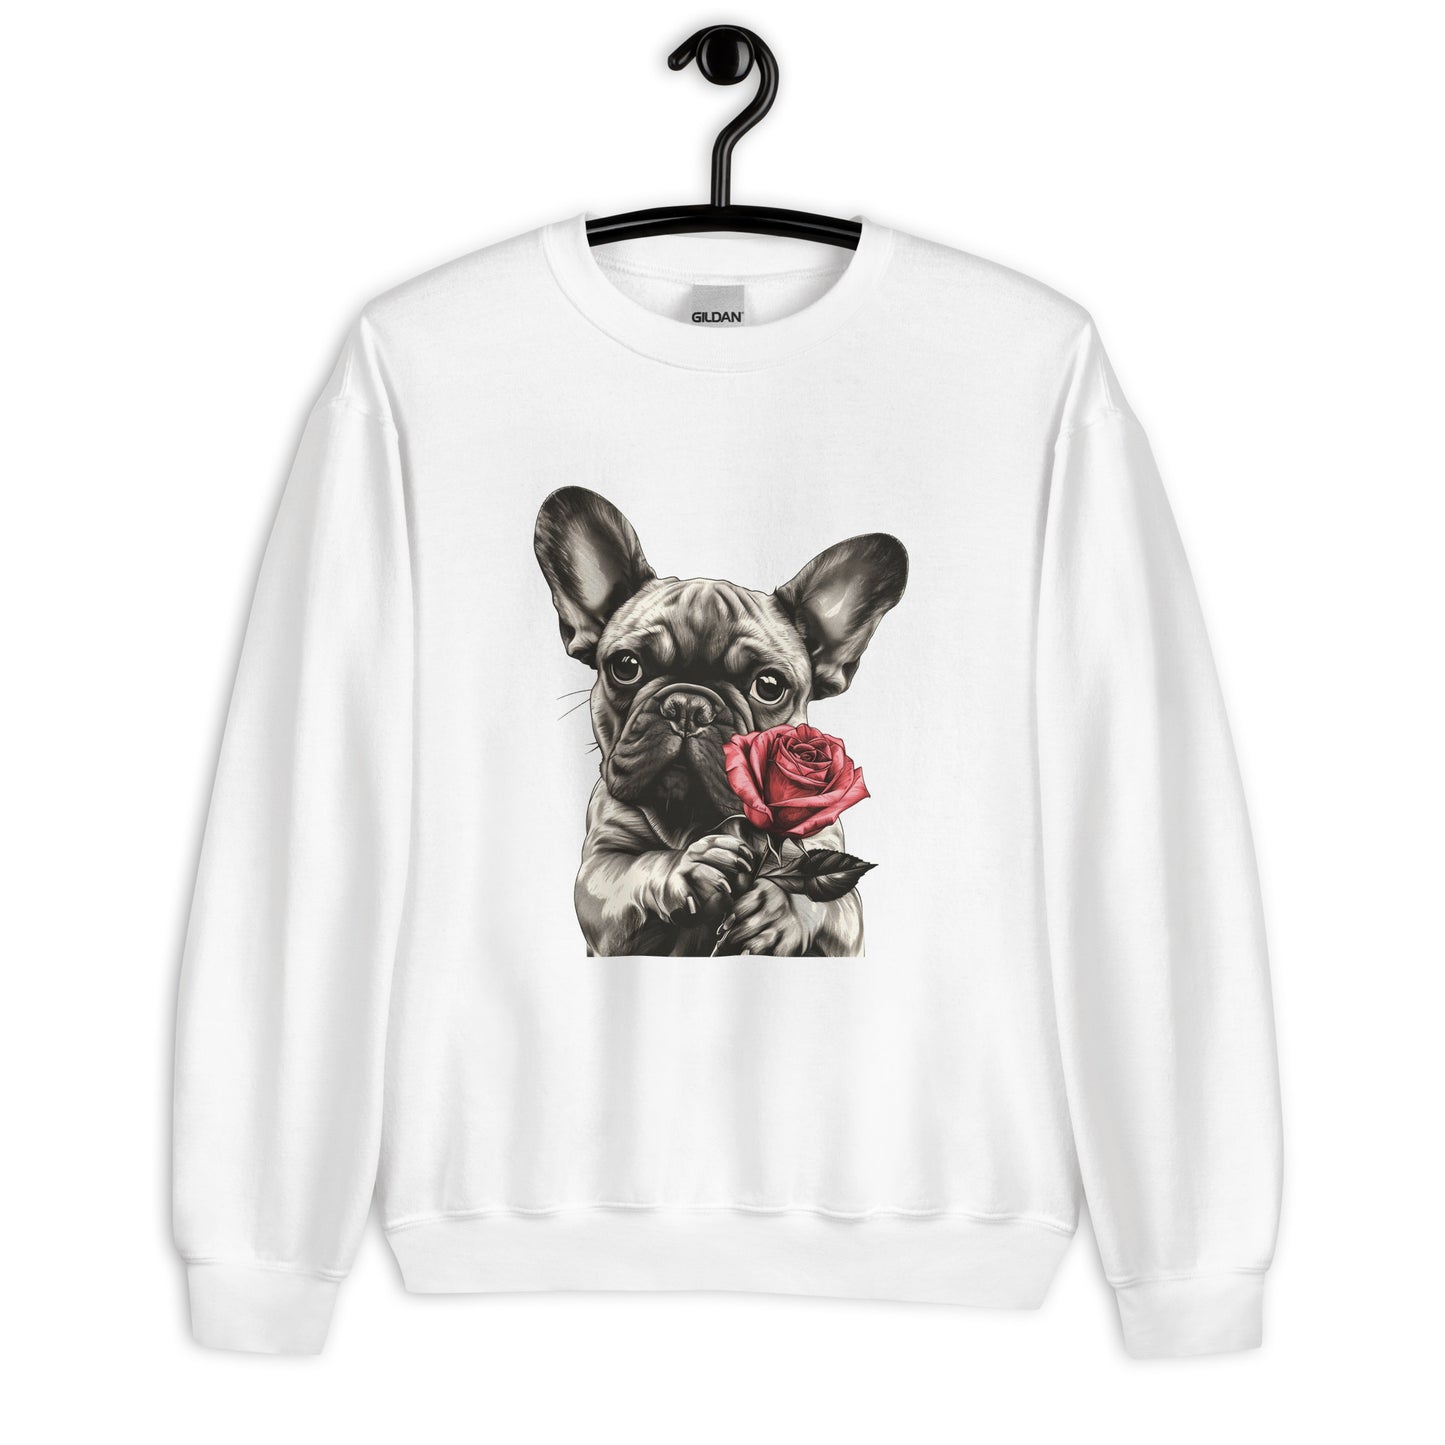 "Rose Embrace" Unisex Sweatshirt